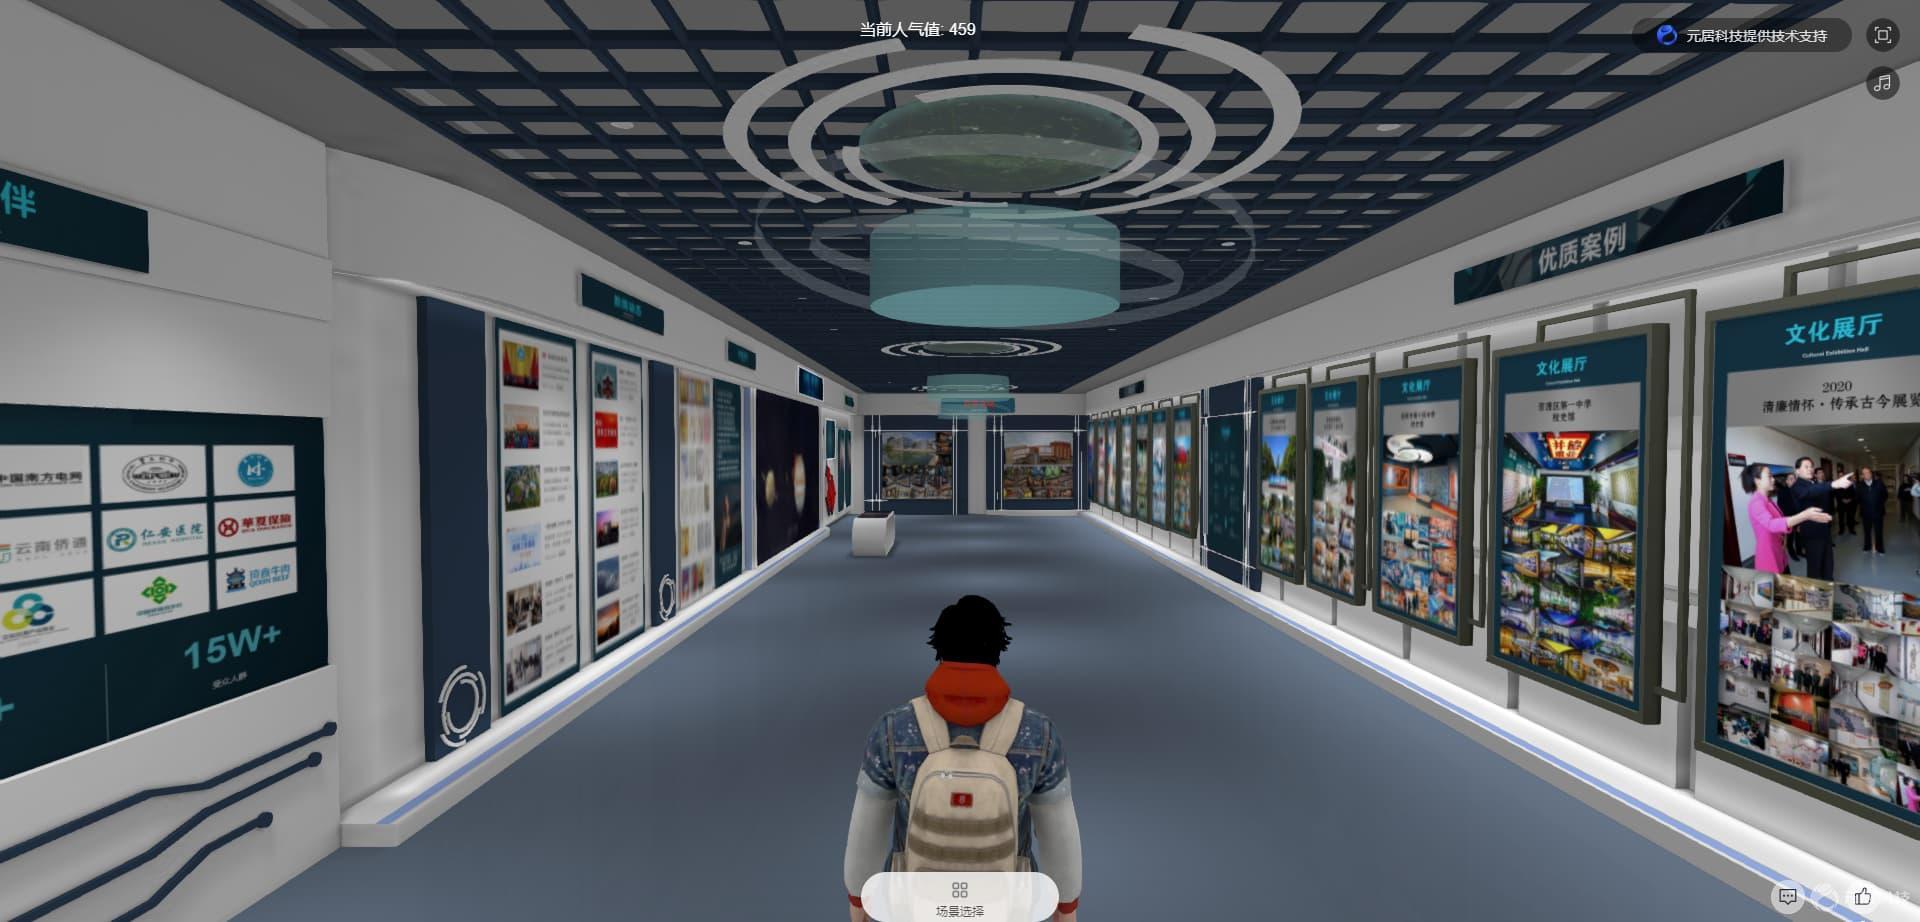 虚拟化展厅